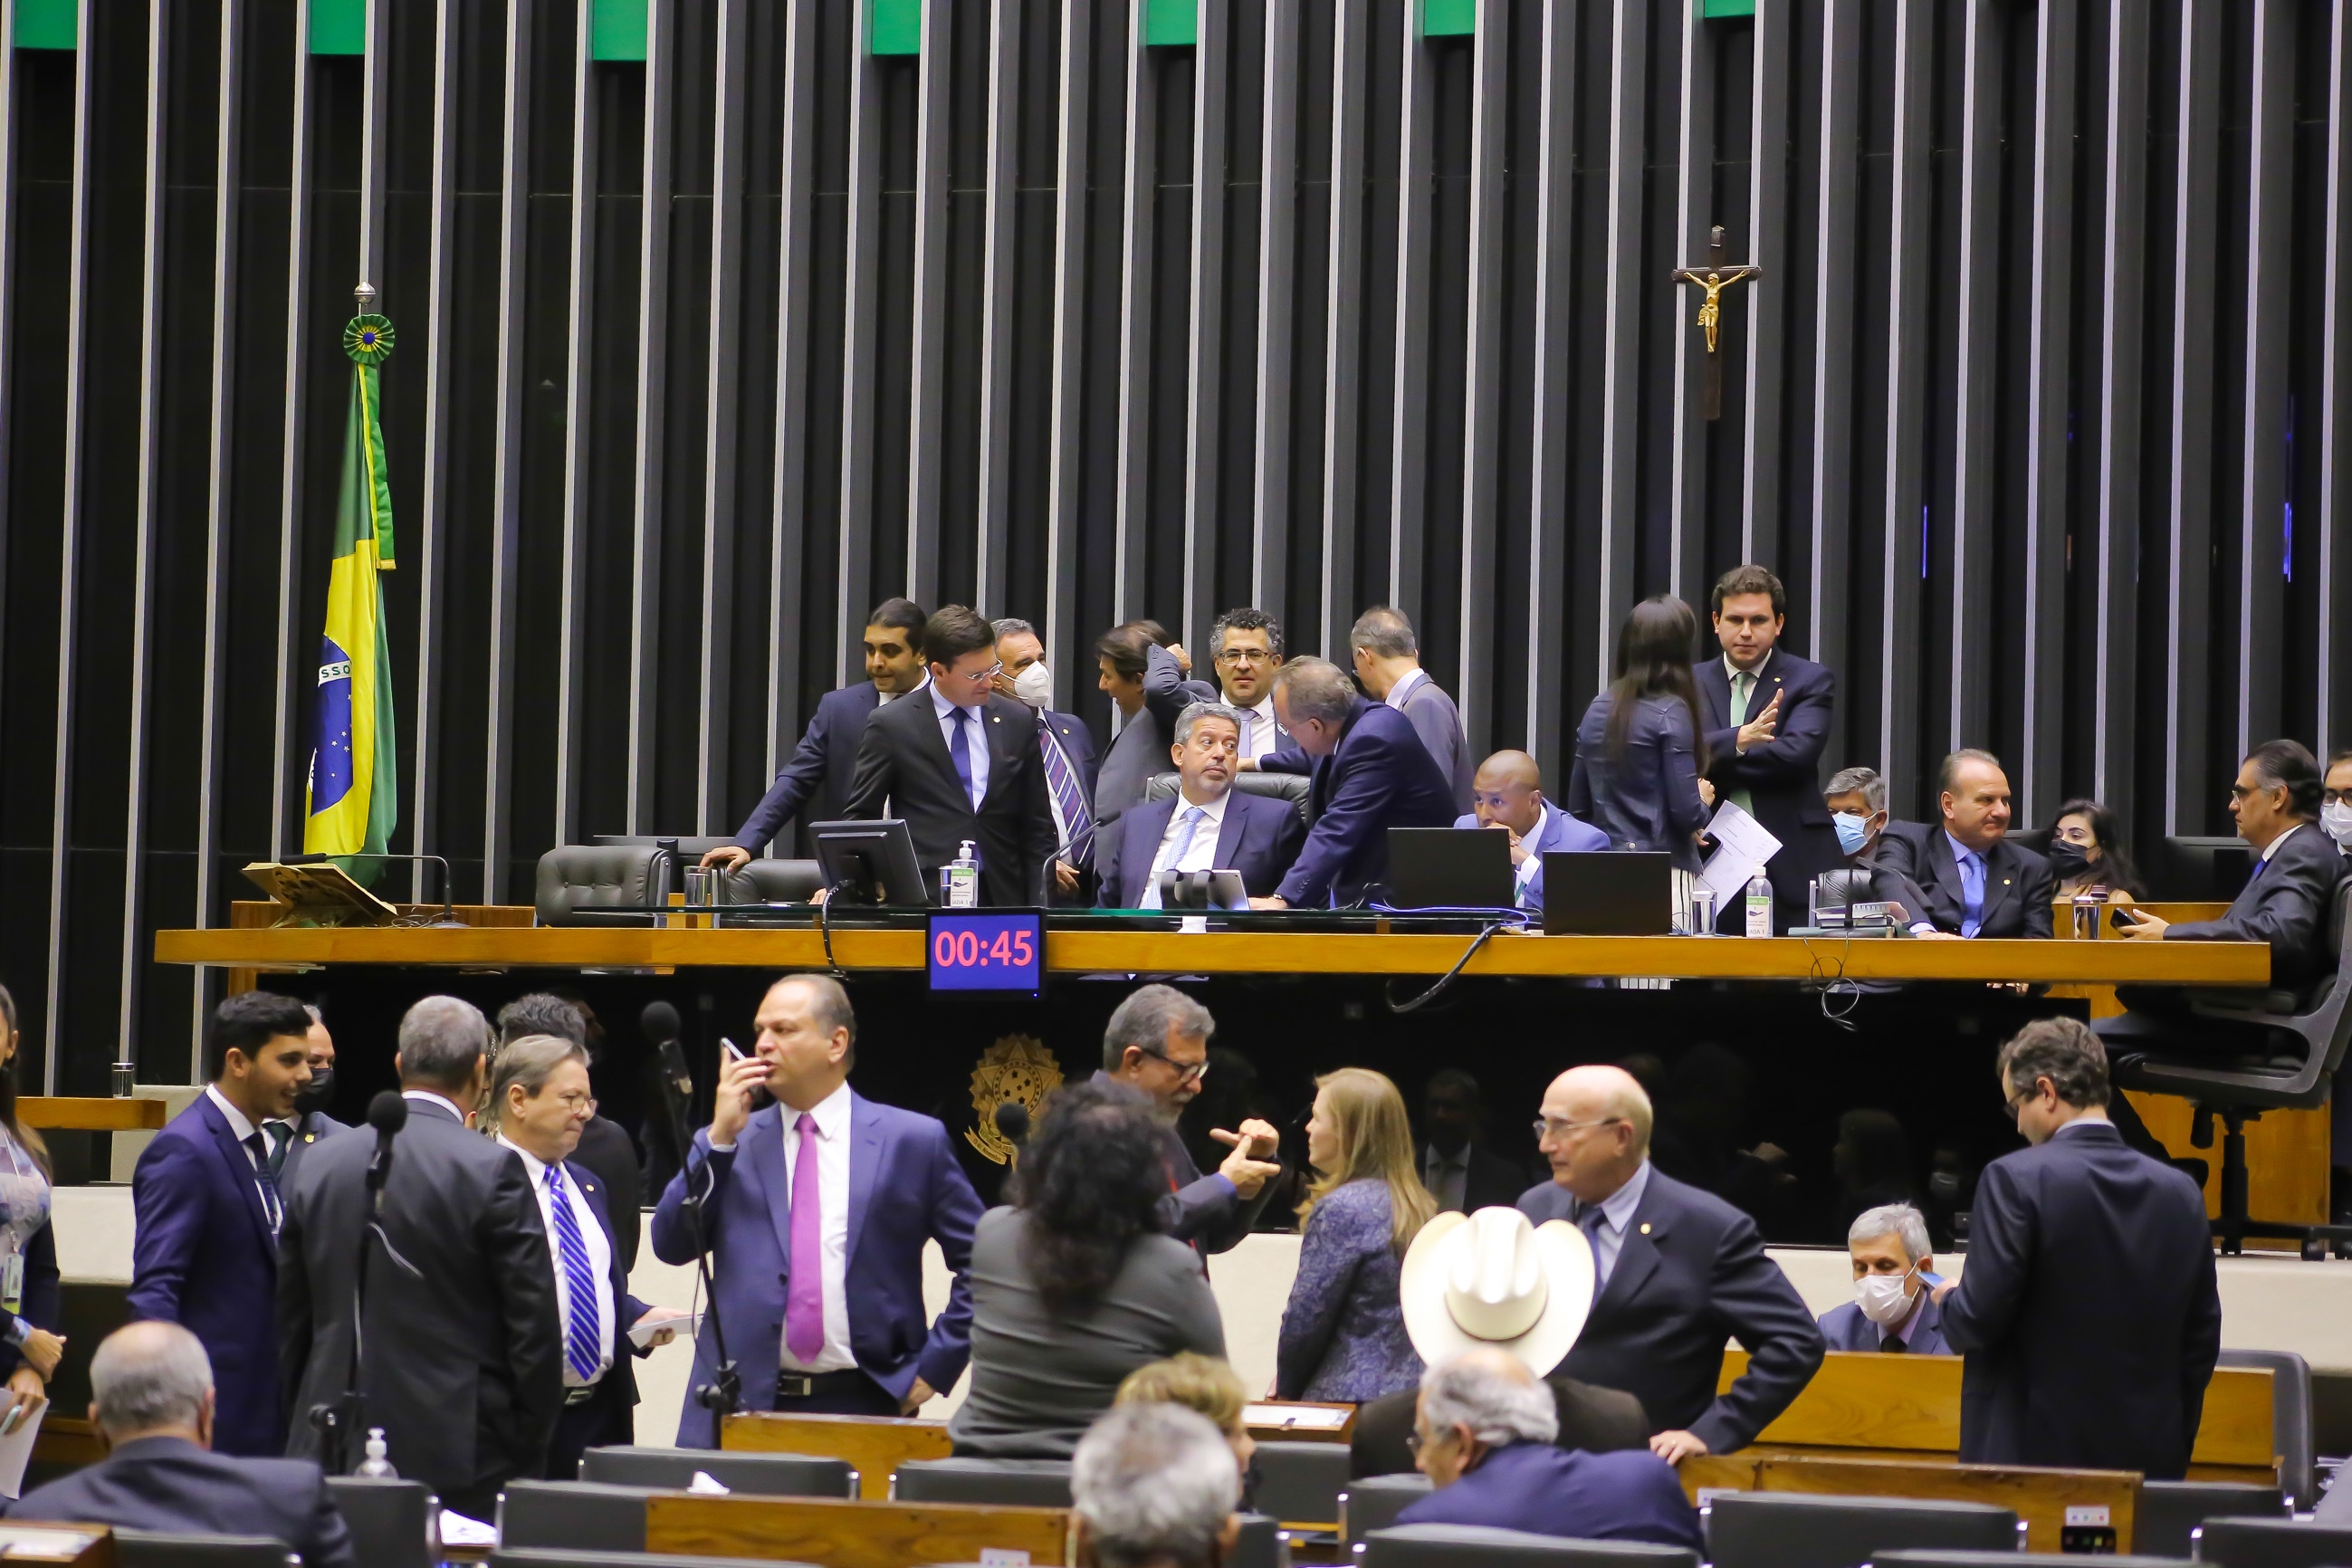 Câmara dos Deputados torna pedofilia crime hediondo no Brasil